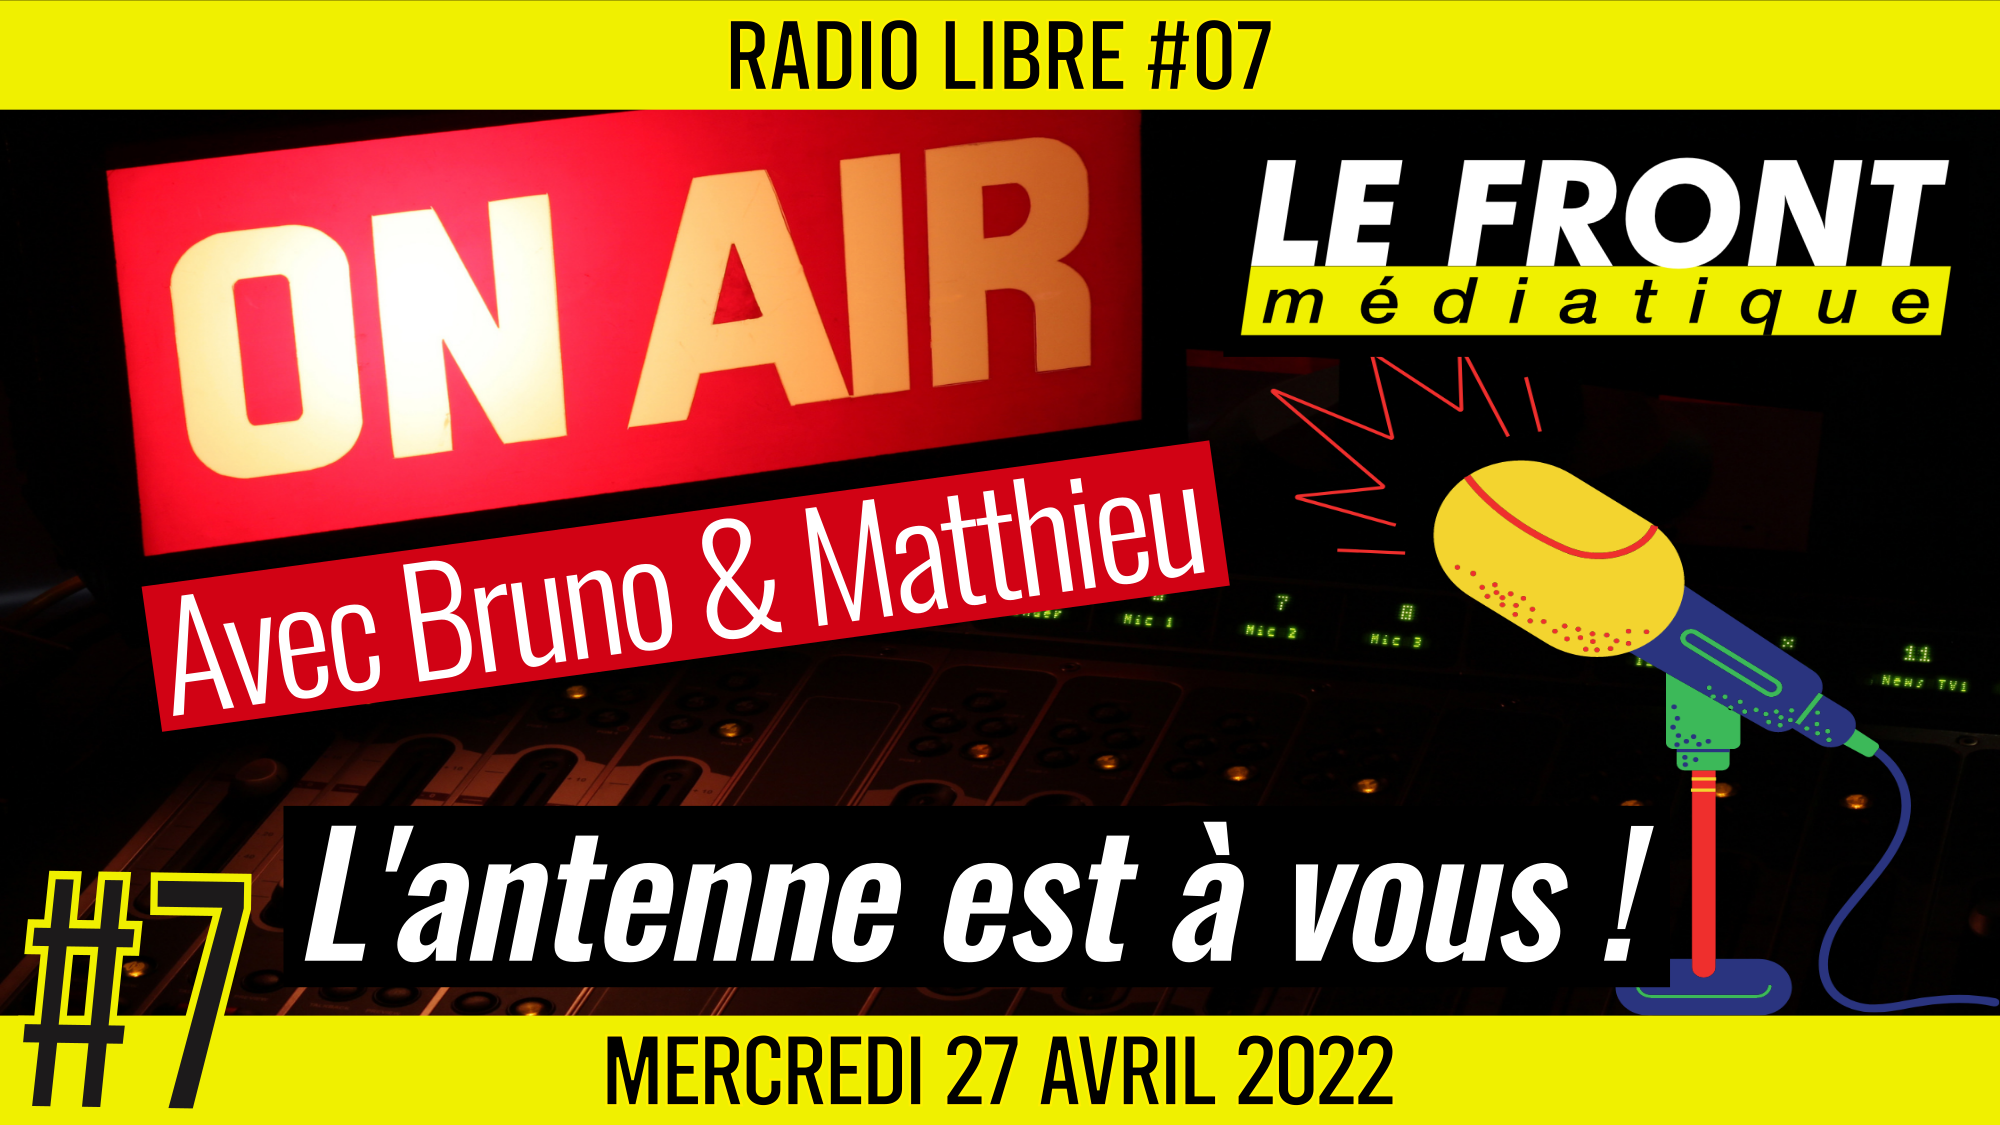 📟 RADIO LIBRE #7 🎙Antenne ouverte aux auditeurs 🗣 Bruno & Matthieu 📆 27-04-2022